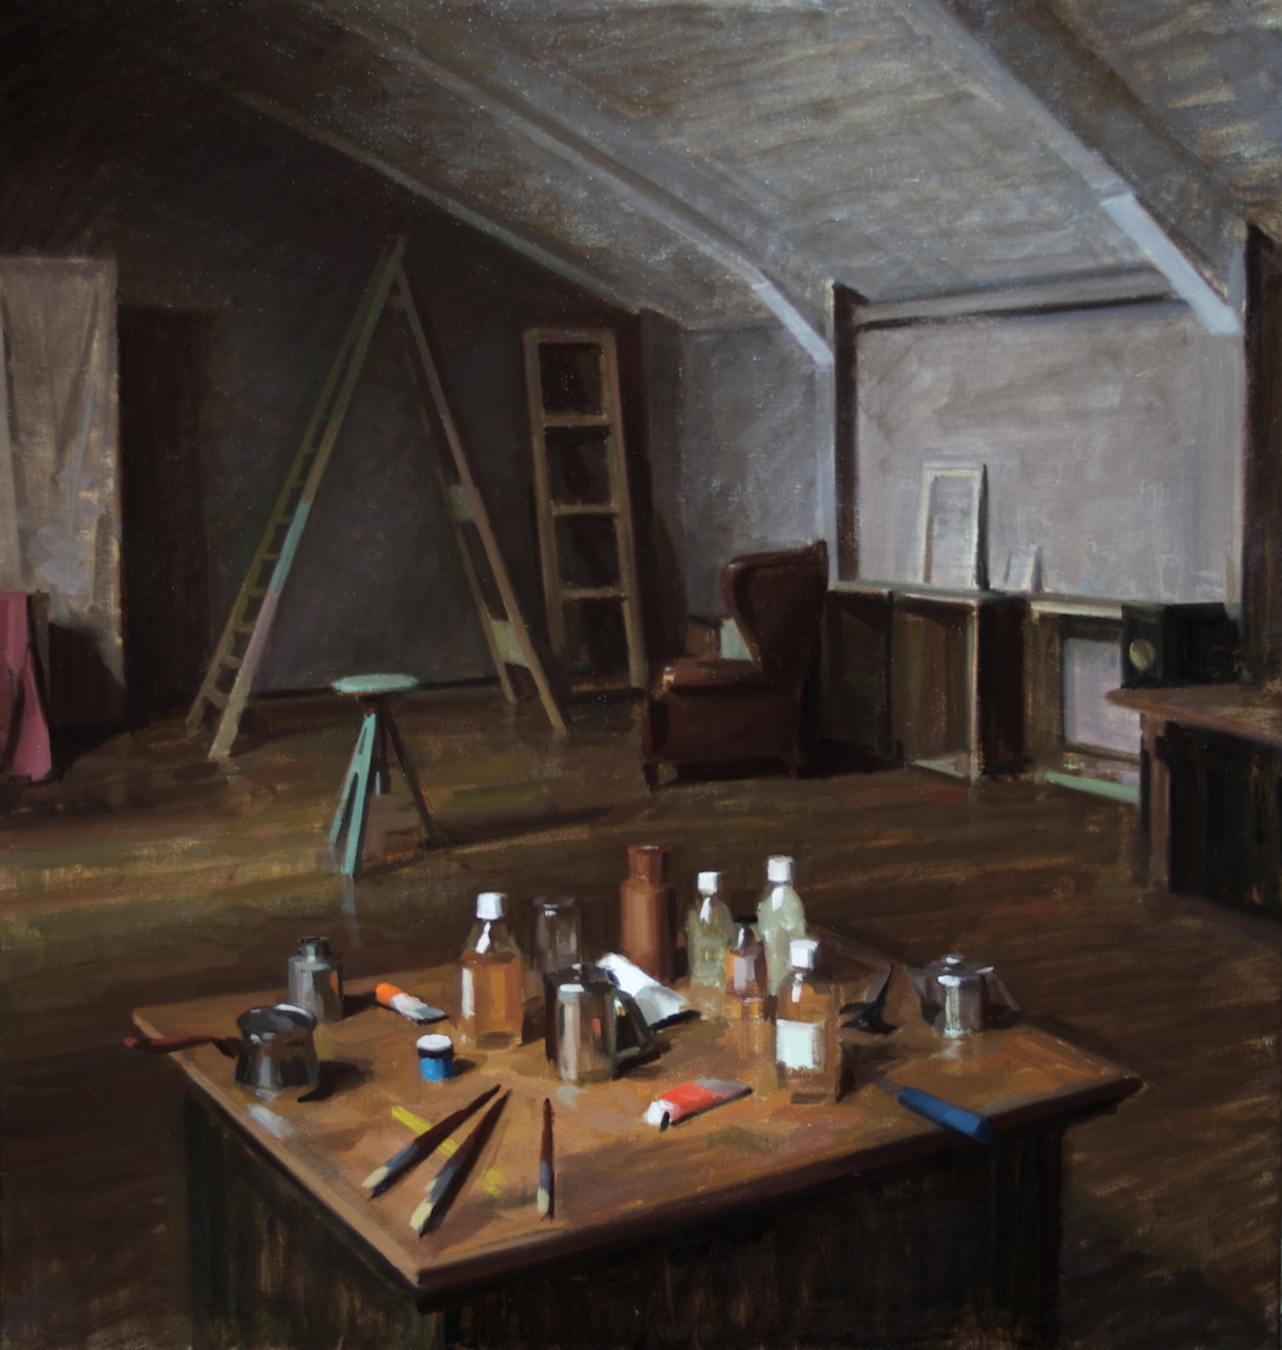   Studio , 2010 oil on canvas 95 x 90 cm   